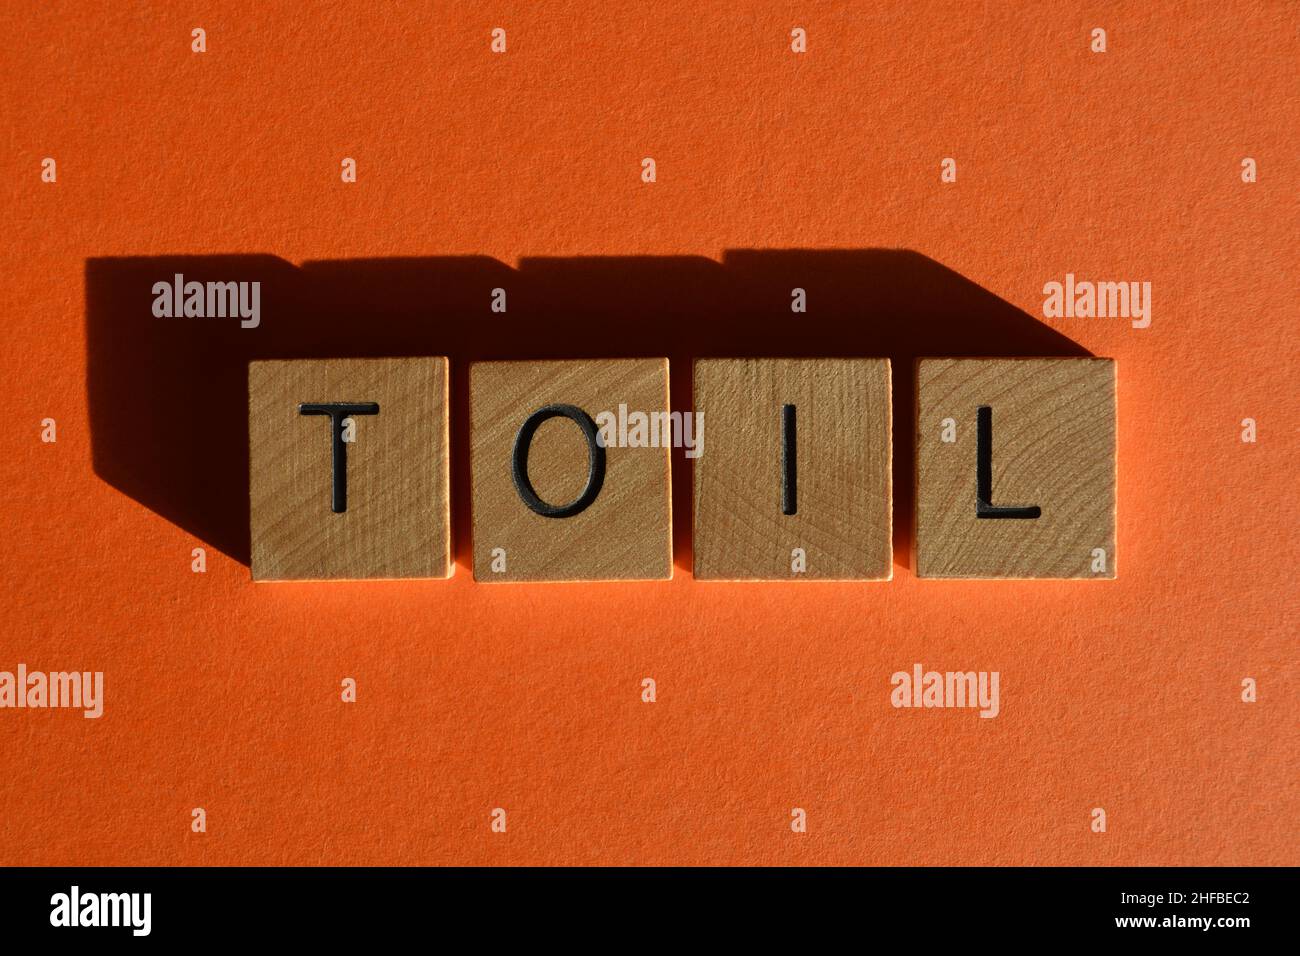 Toil, mot ou acronyme de Time Off in lieu, en lettres de l'alphabet de bois isolées sur fond orange Banque D'Images